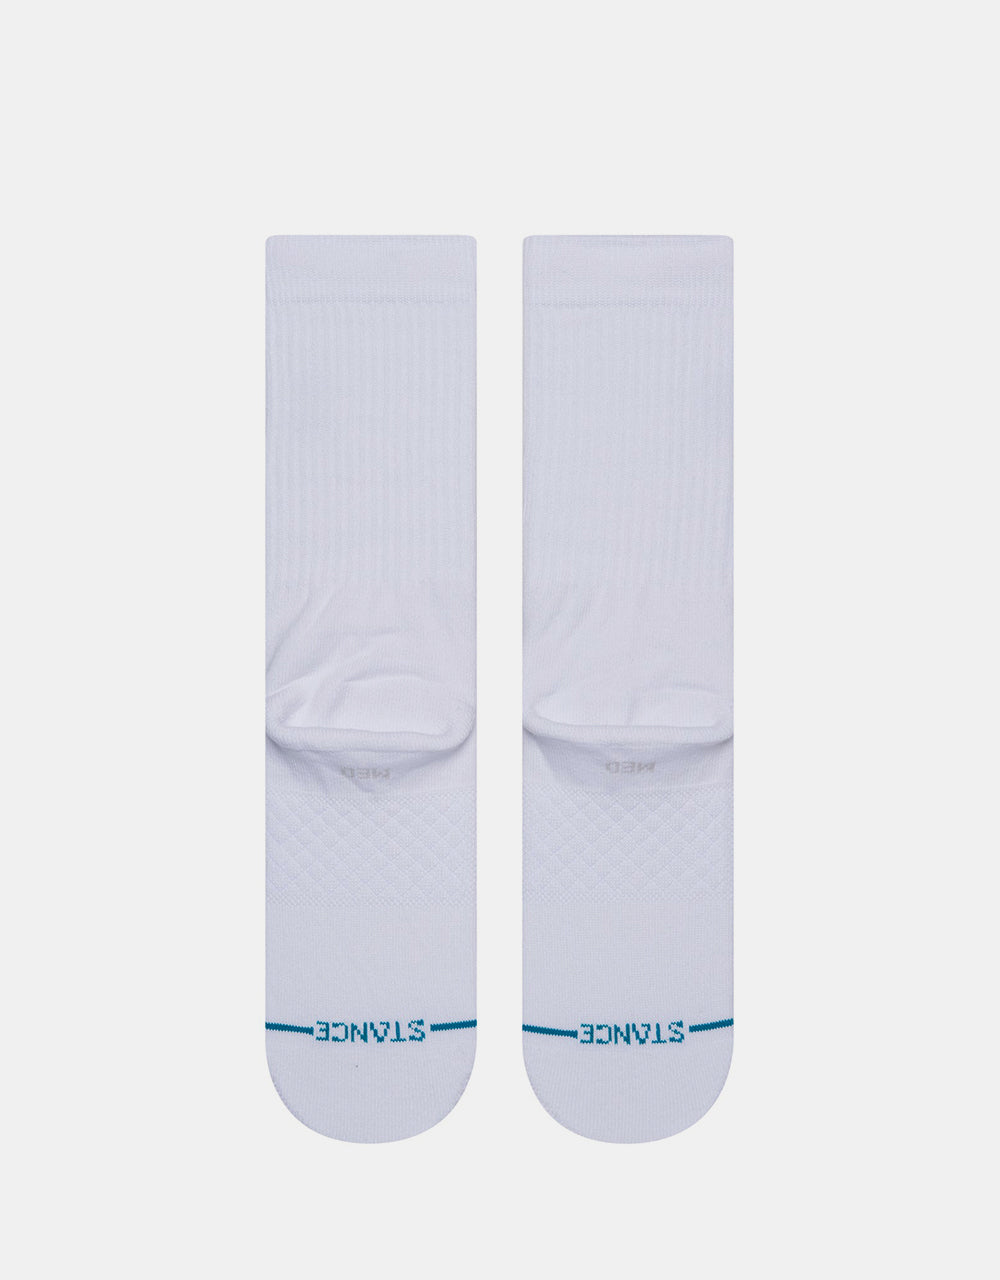 Stance x NBA Logoman Crew Socks - White